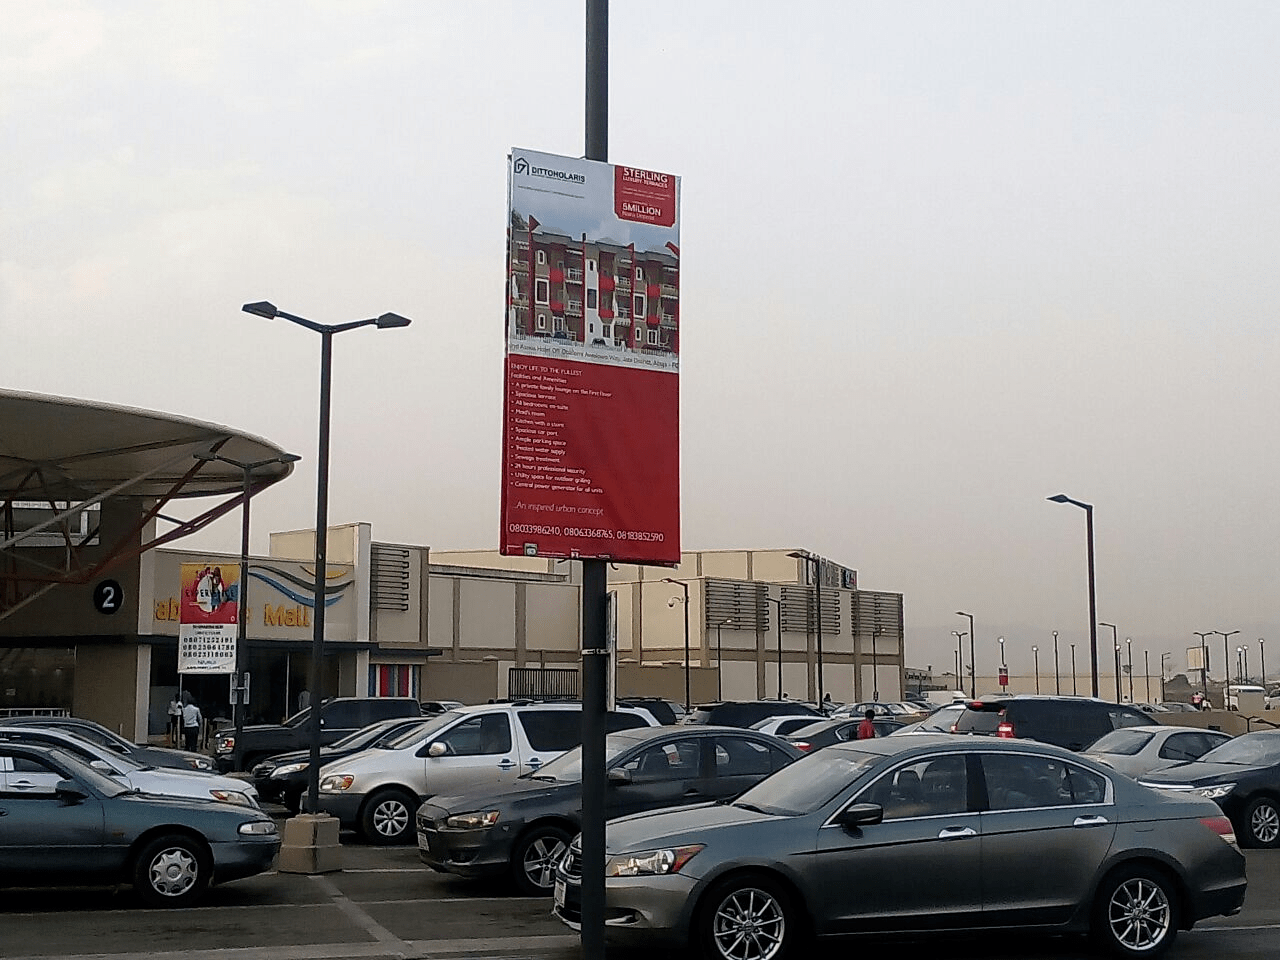 Lamp Post Advertising Agency in Nigeria